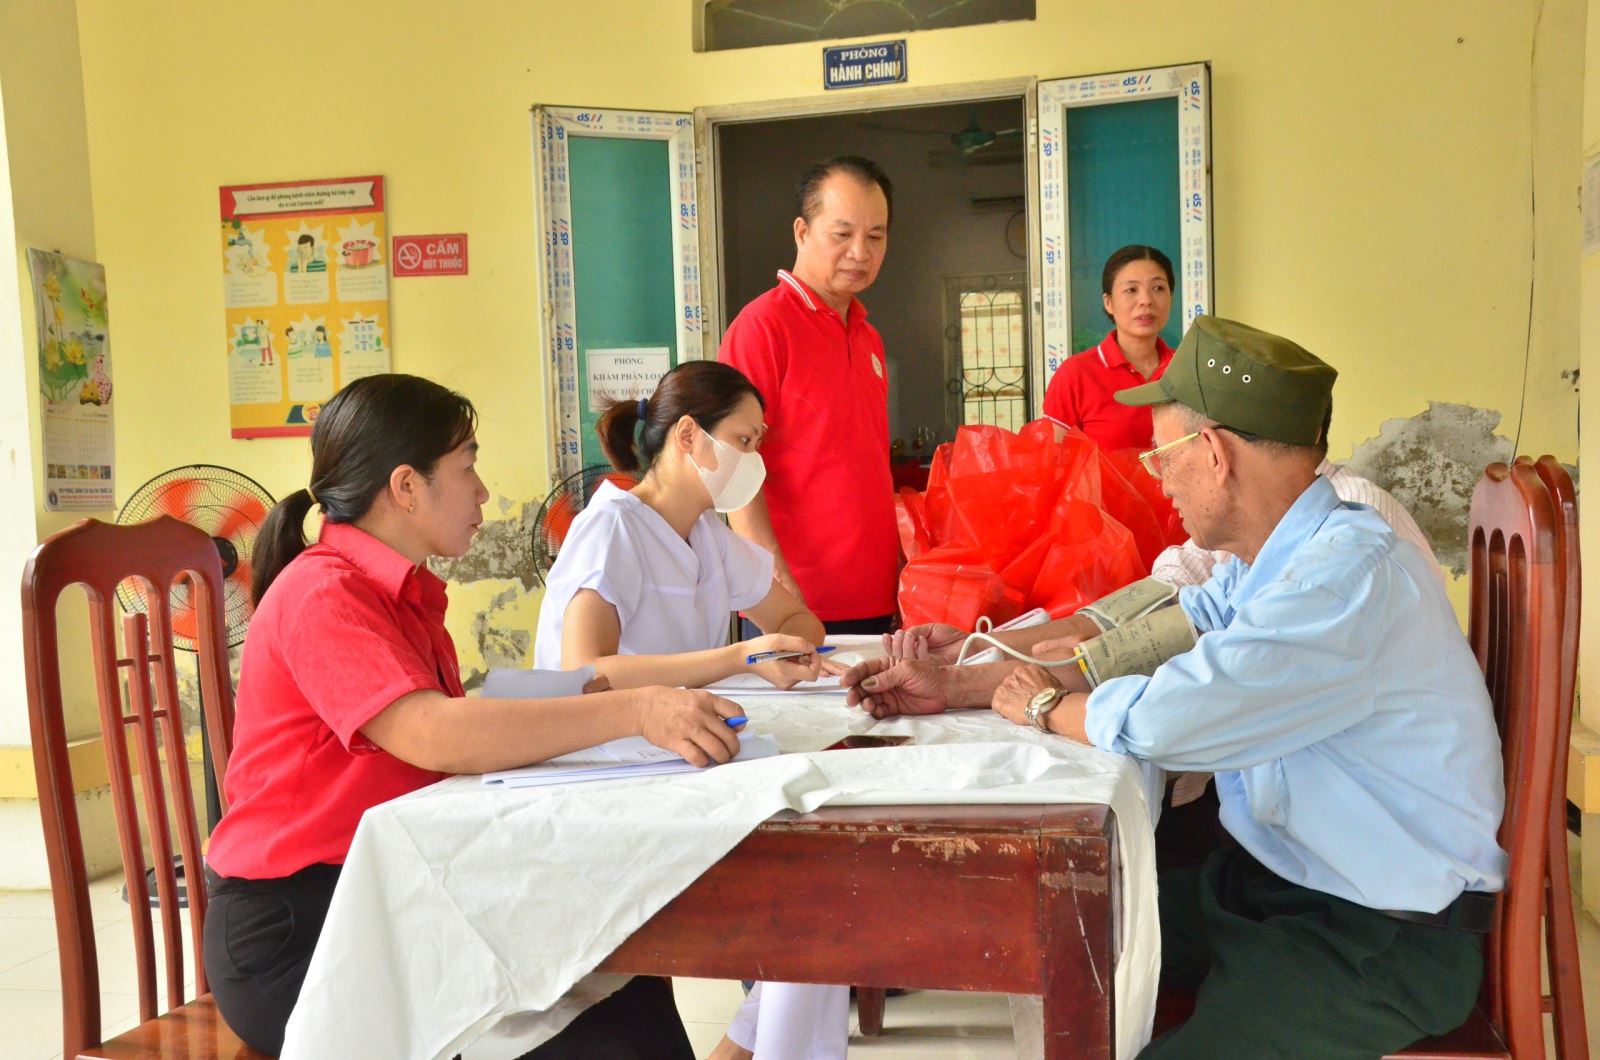 Hội Chữ Thập đỏ Mỹ Hào tổ chức khám bệnh và cấp thuốc miễn phí cho các đối tượng nạn nhân chất độc da cam 